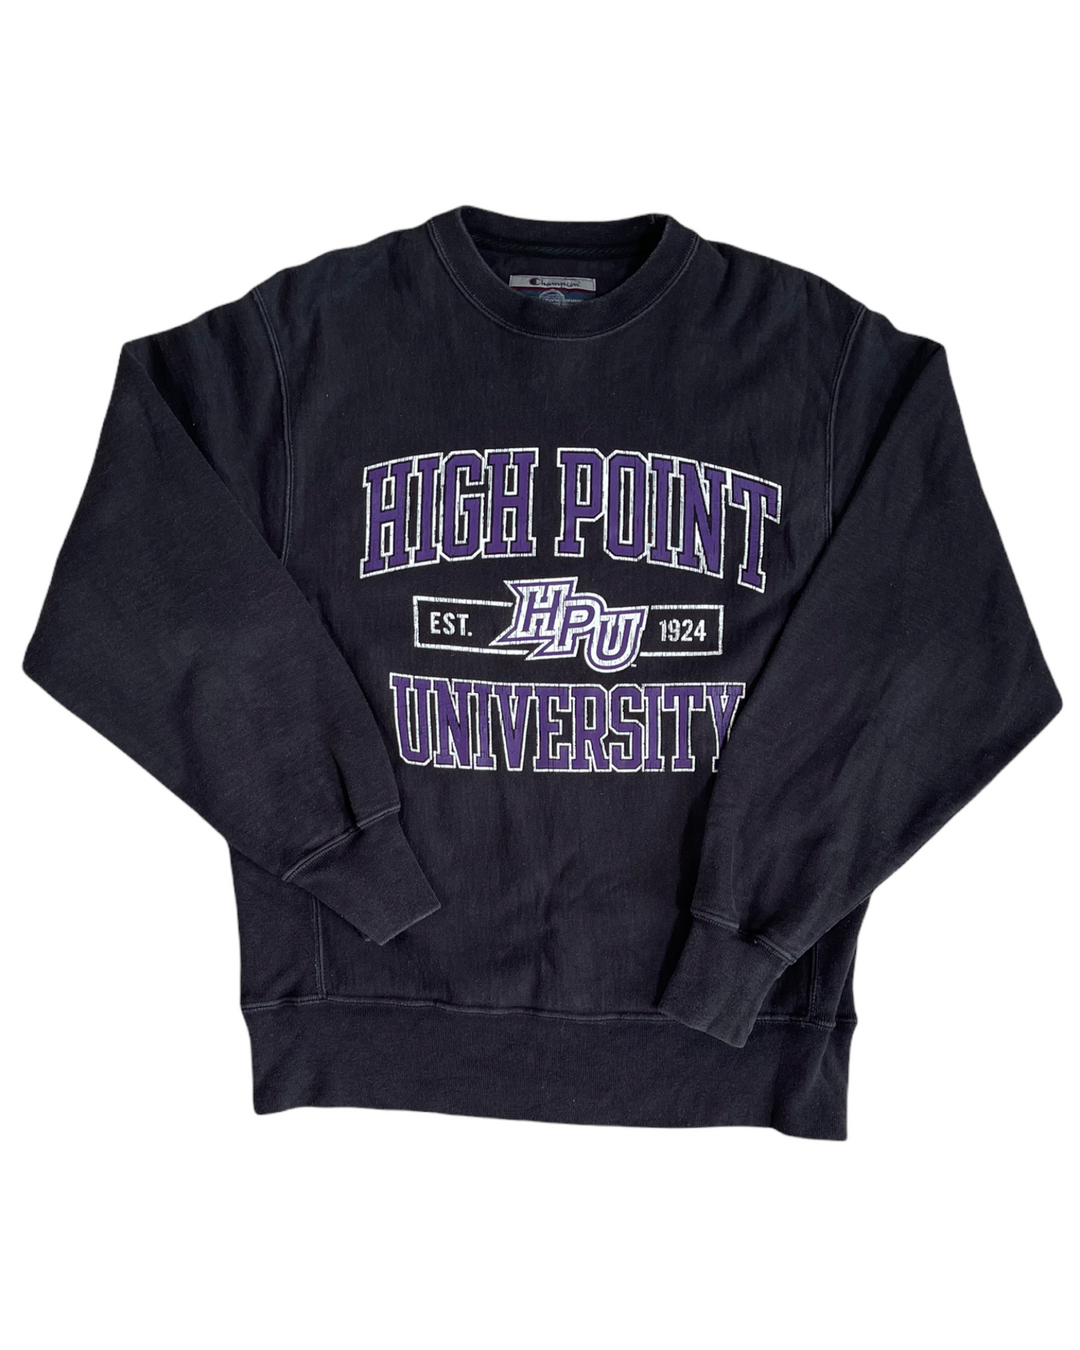 High Point Vintage Sweatshirt